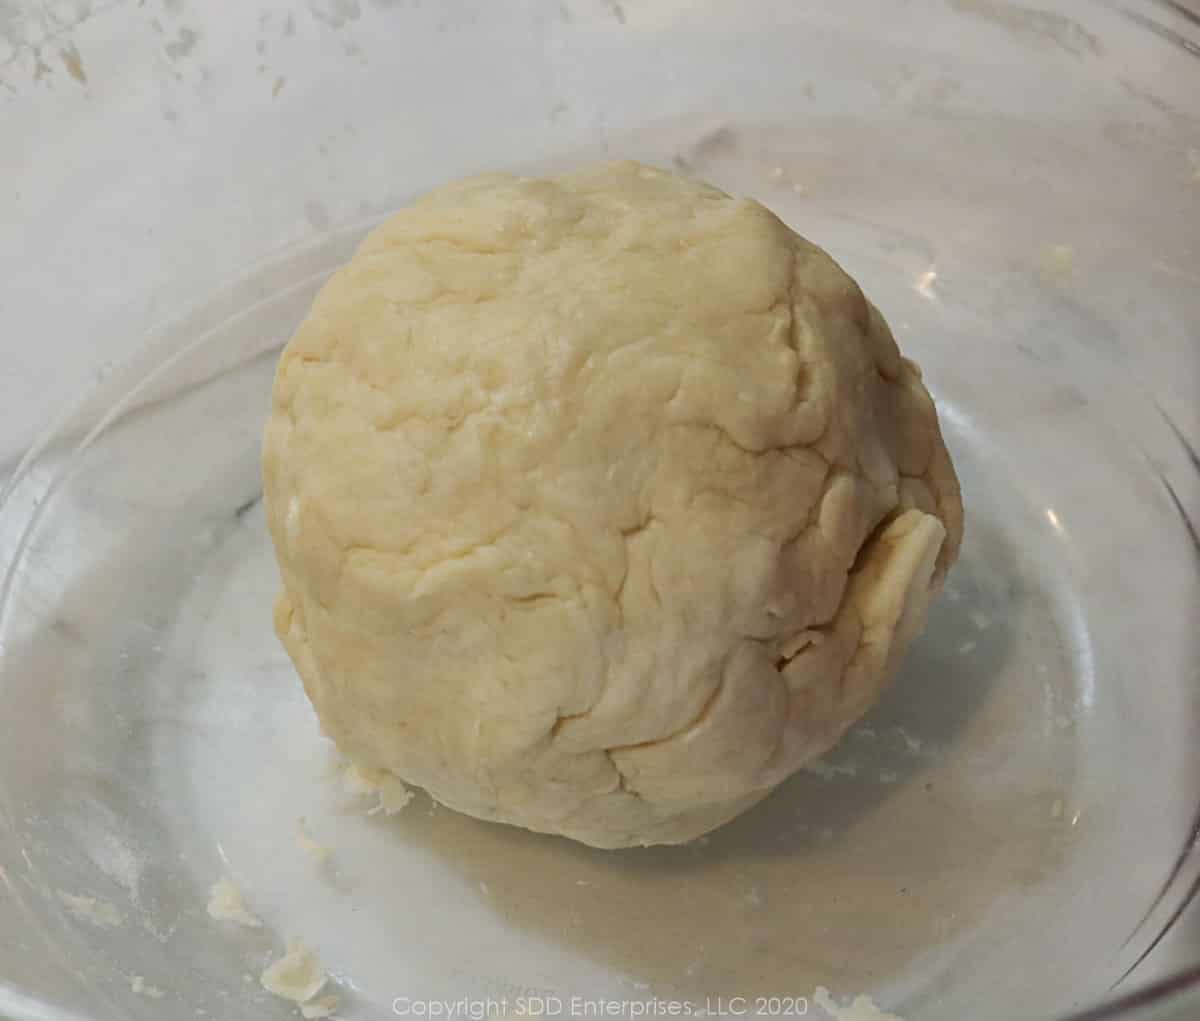 prepared dough for pecan tarts